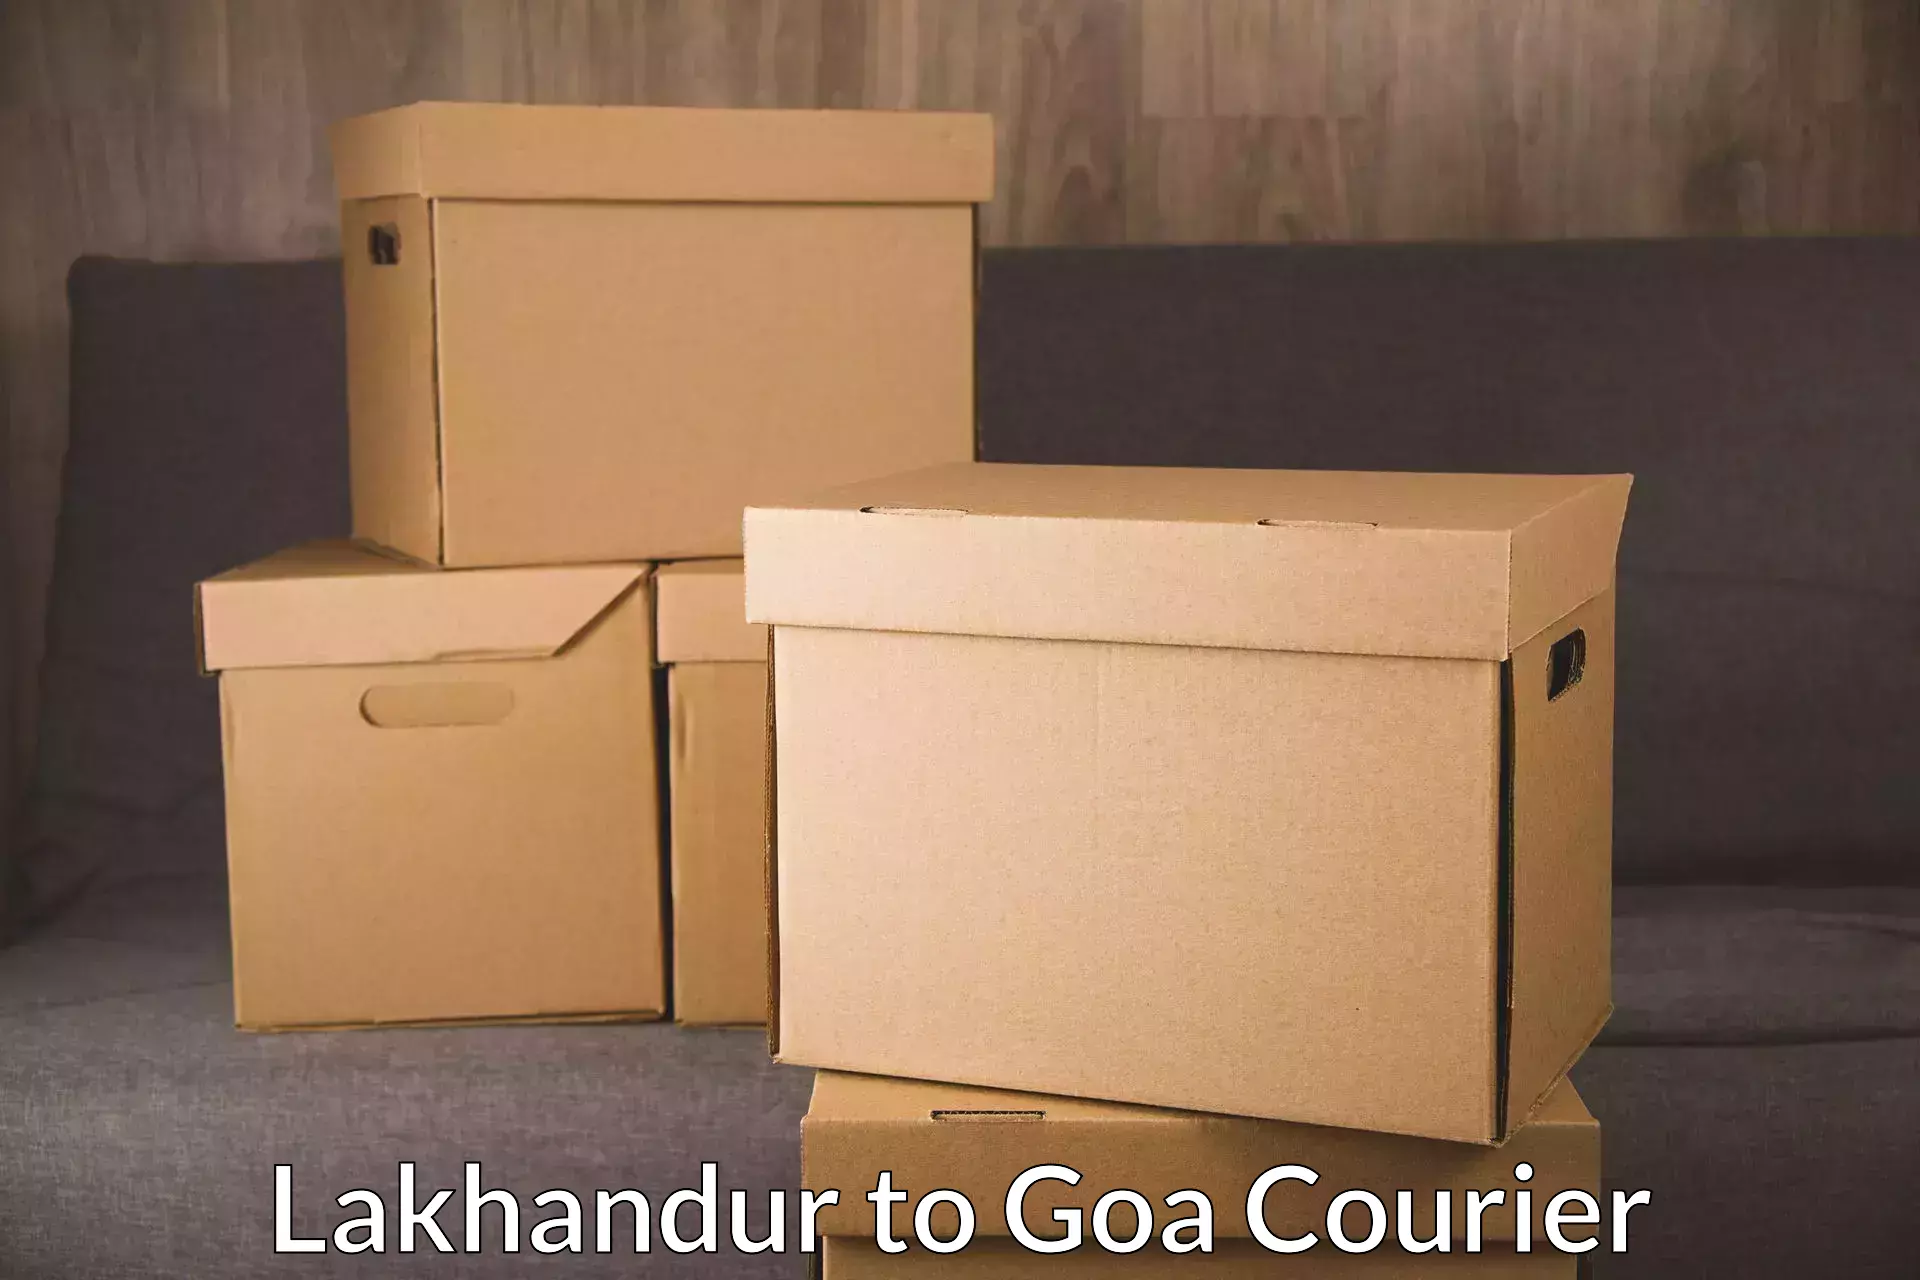 Door-to-door freight service Lakhandur to Goa